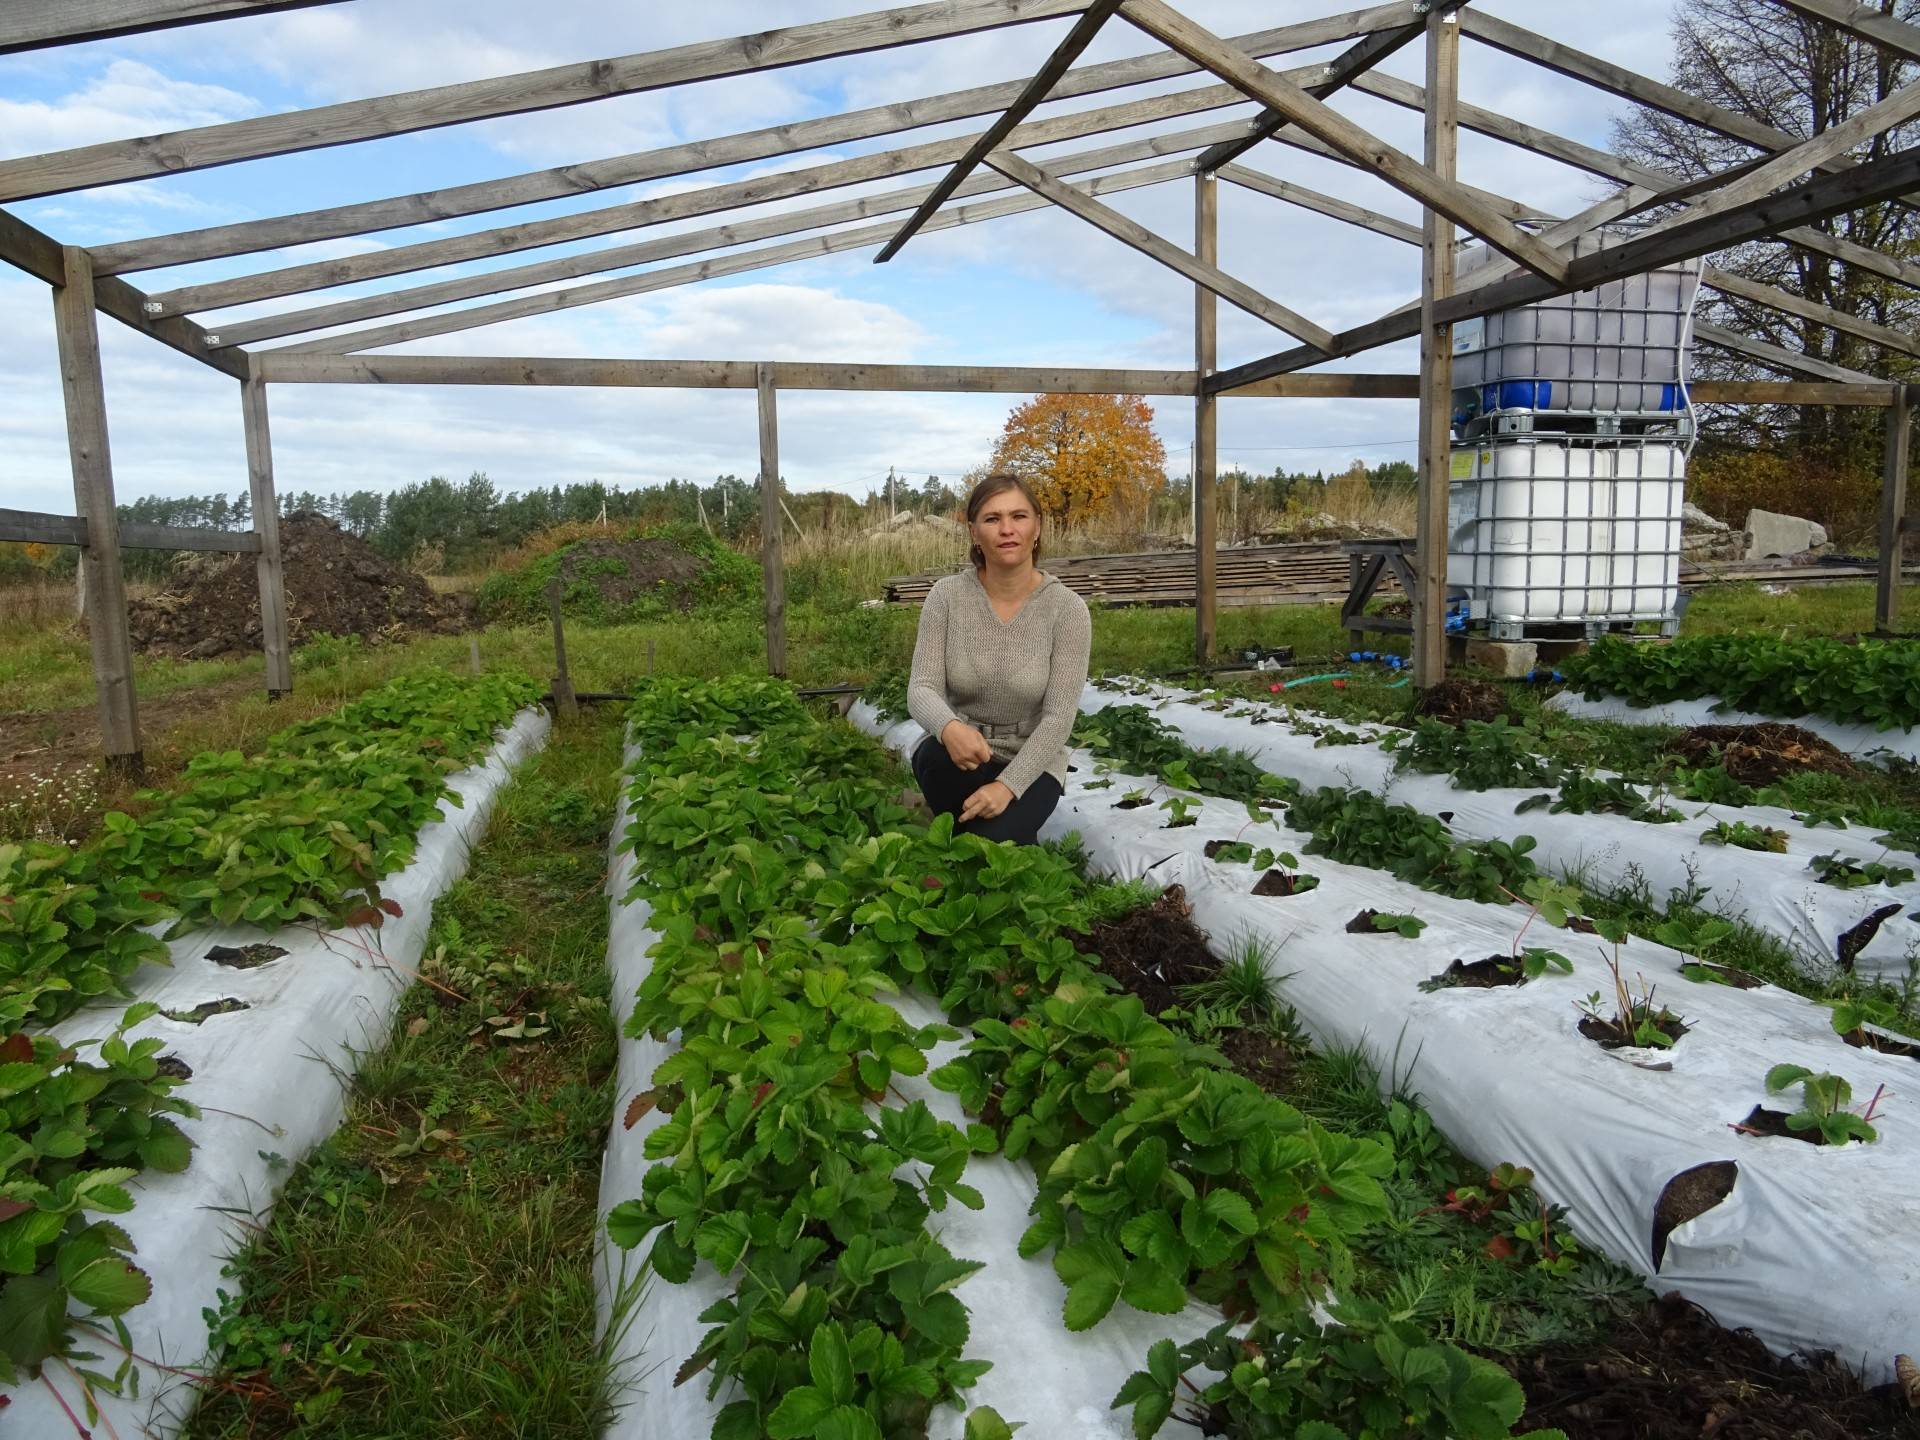 Пошаговая технология выращивания клубники в мешках в открытом грунте и теплице